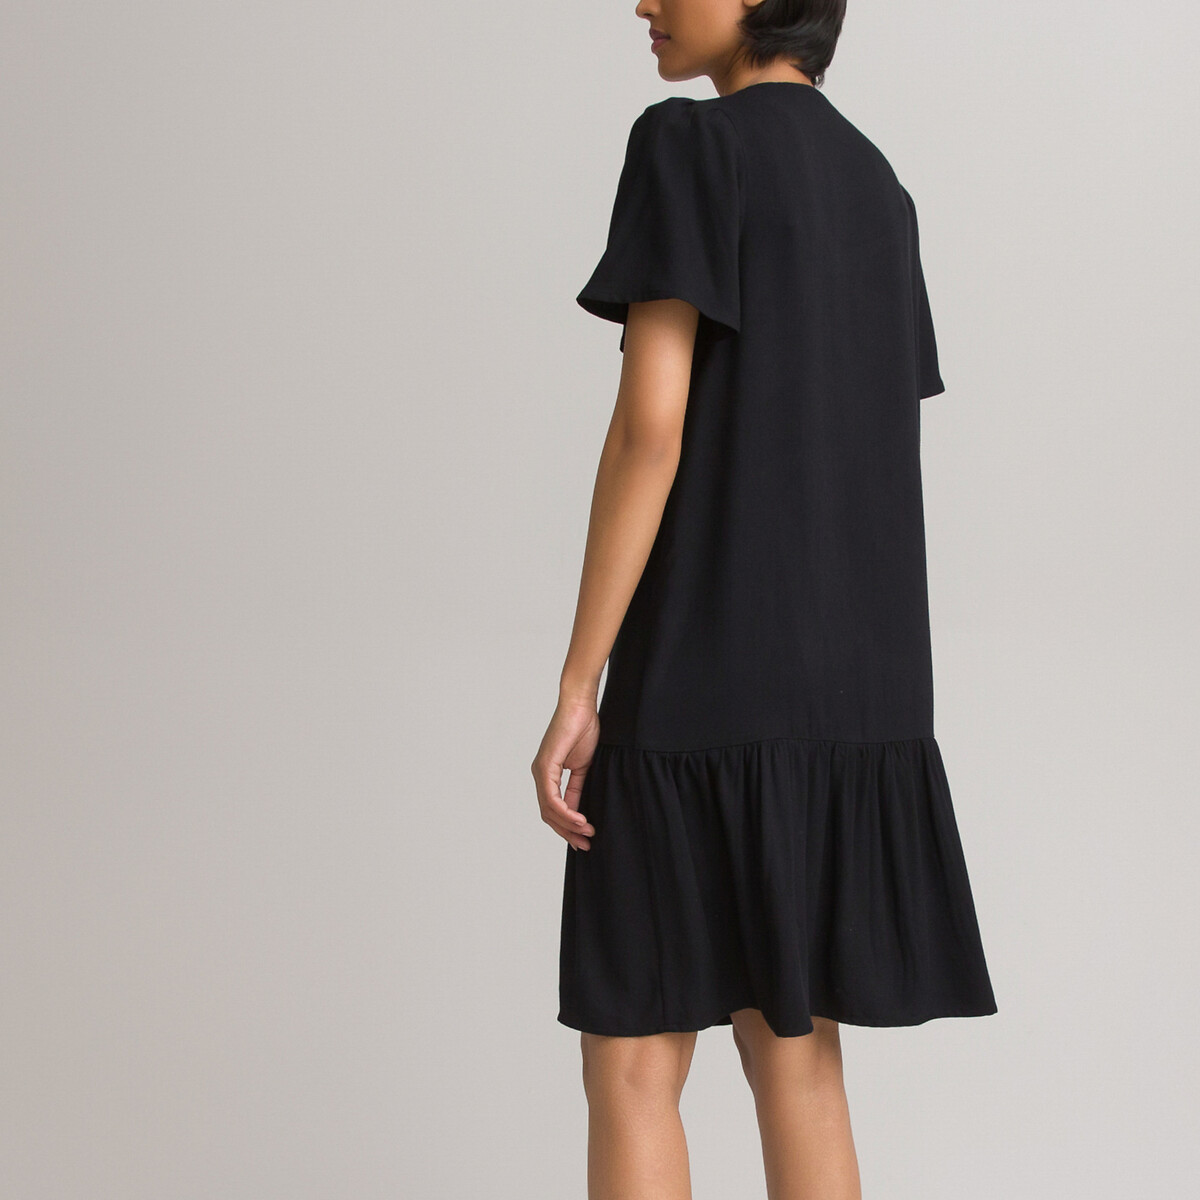 Платье LaRedoute Короткое с V-образным вырезом на пуговицах низ с воланом 42 черный, размер 42 - фото 4